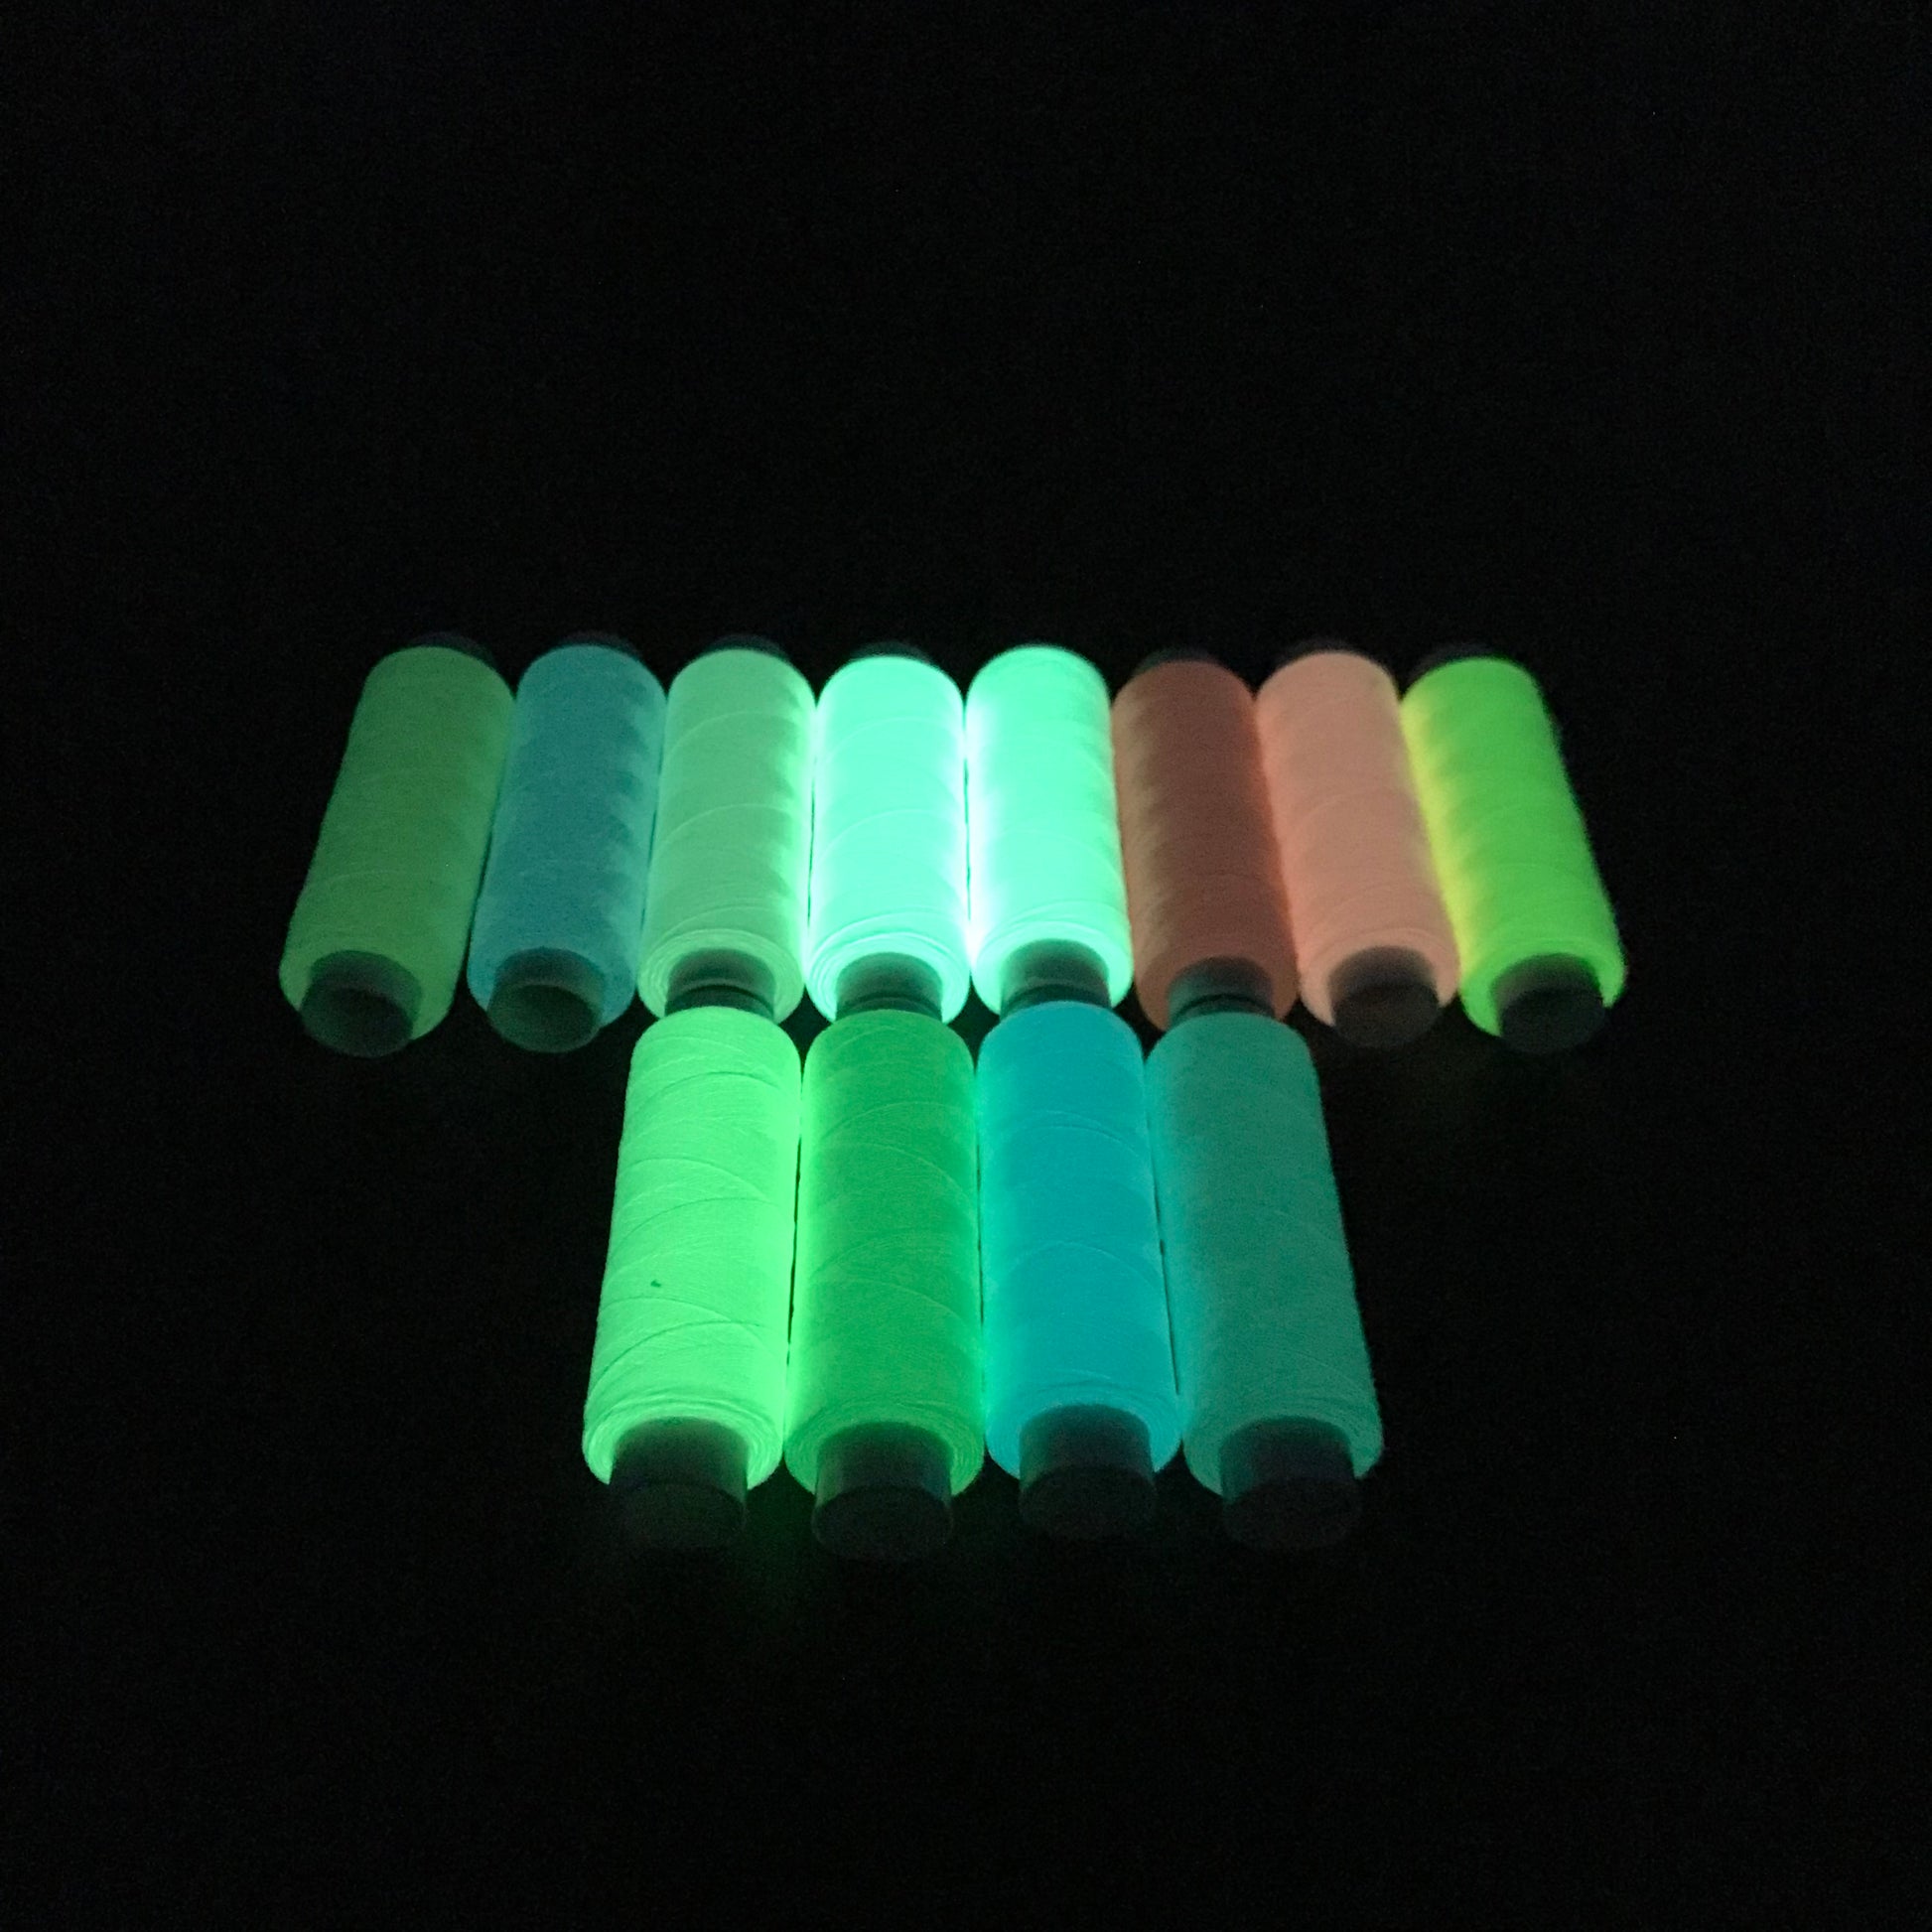 Luminous fluorescent Embroidery Thread Kit glow in the dark